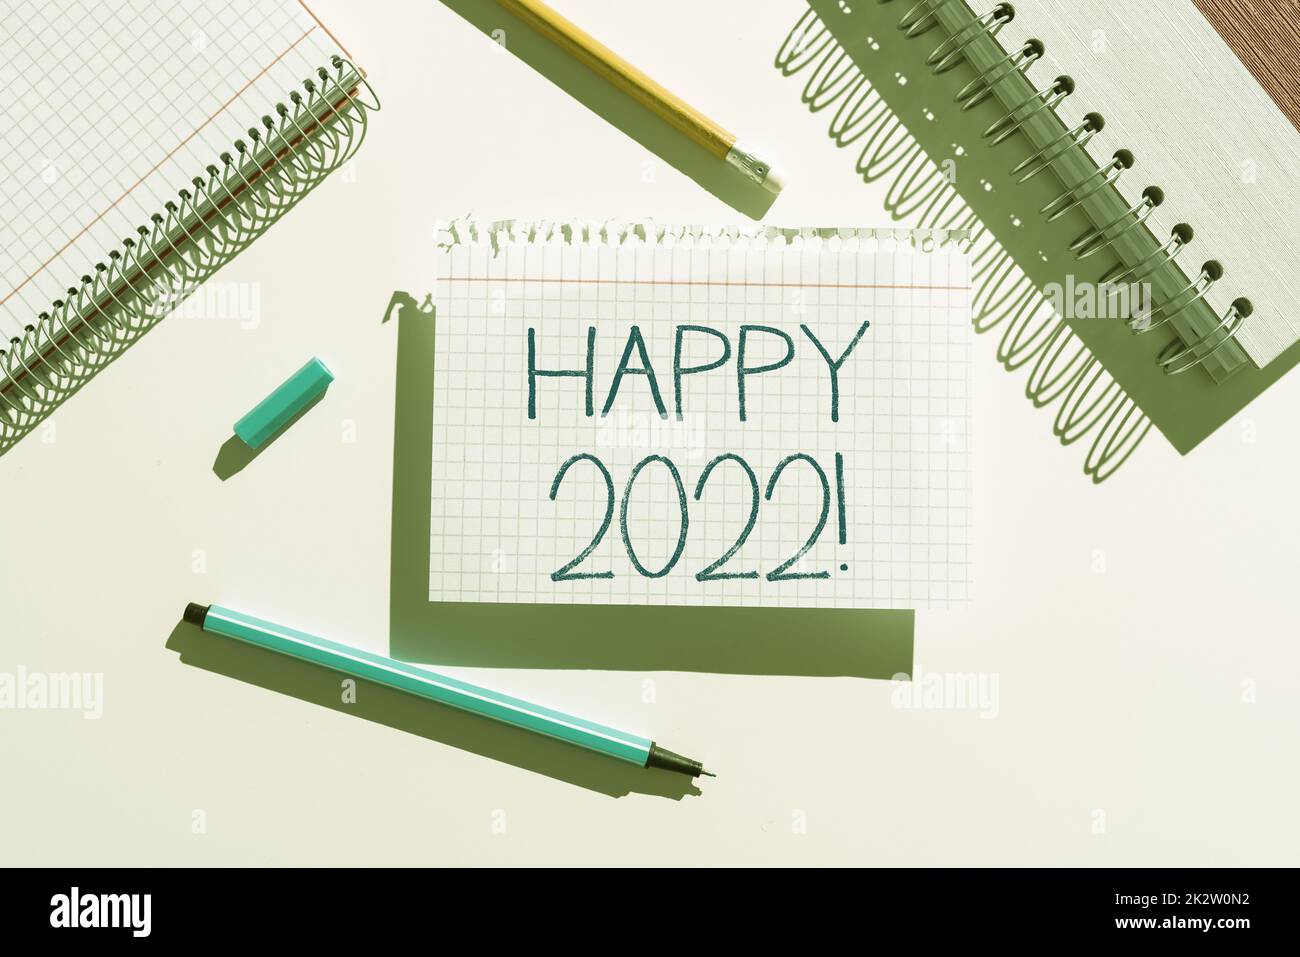 Textschild mit Happy 2022. Wort, das zu der Zeit oder am Tag geschrieben wurde, zu der ein neues Kalenderjahr ab jetzt -47374 beginnt Stockfoto